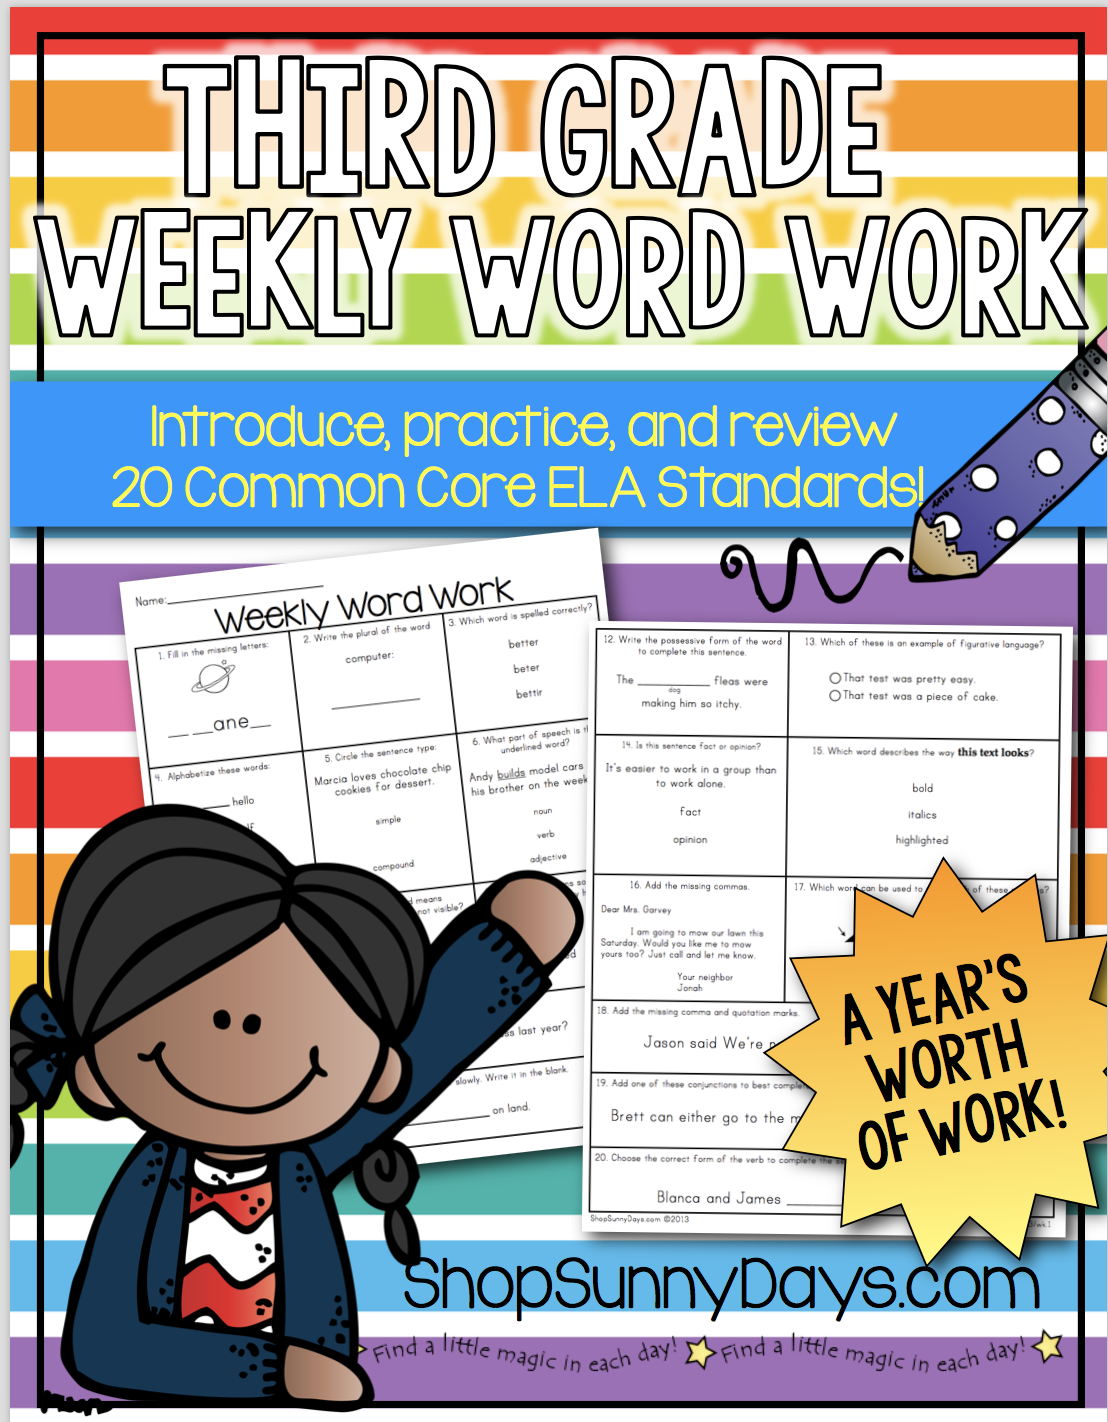 Third Grade Weekly Word Work